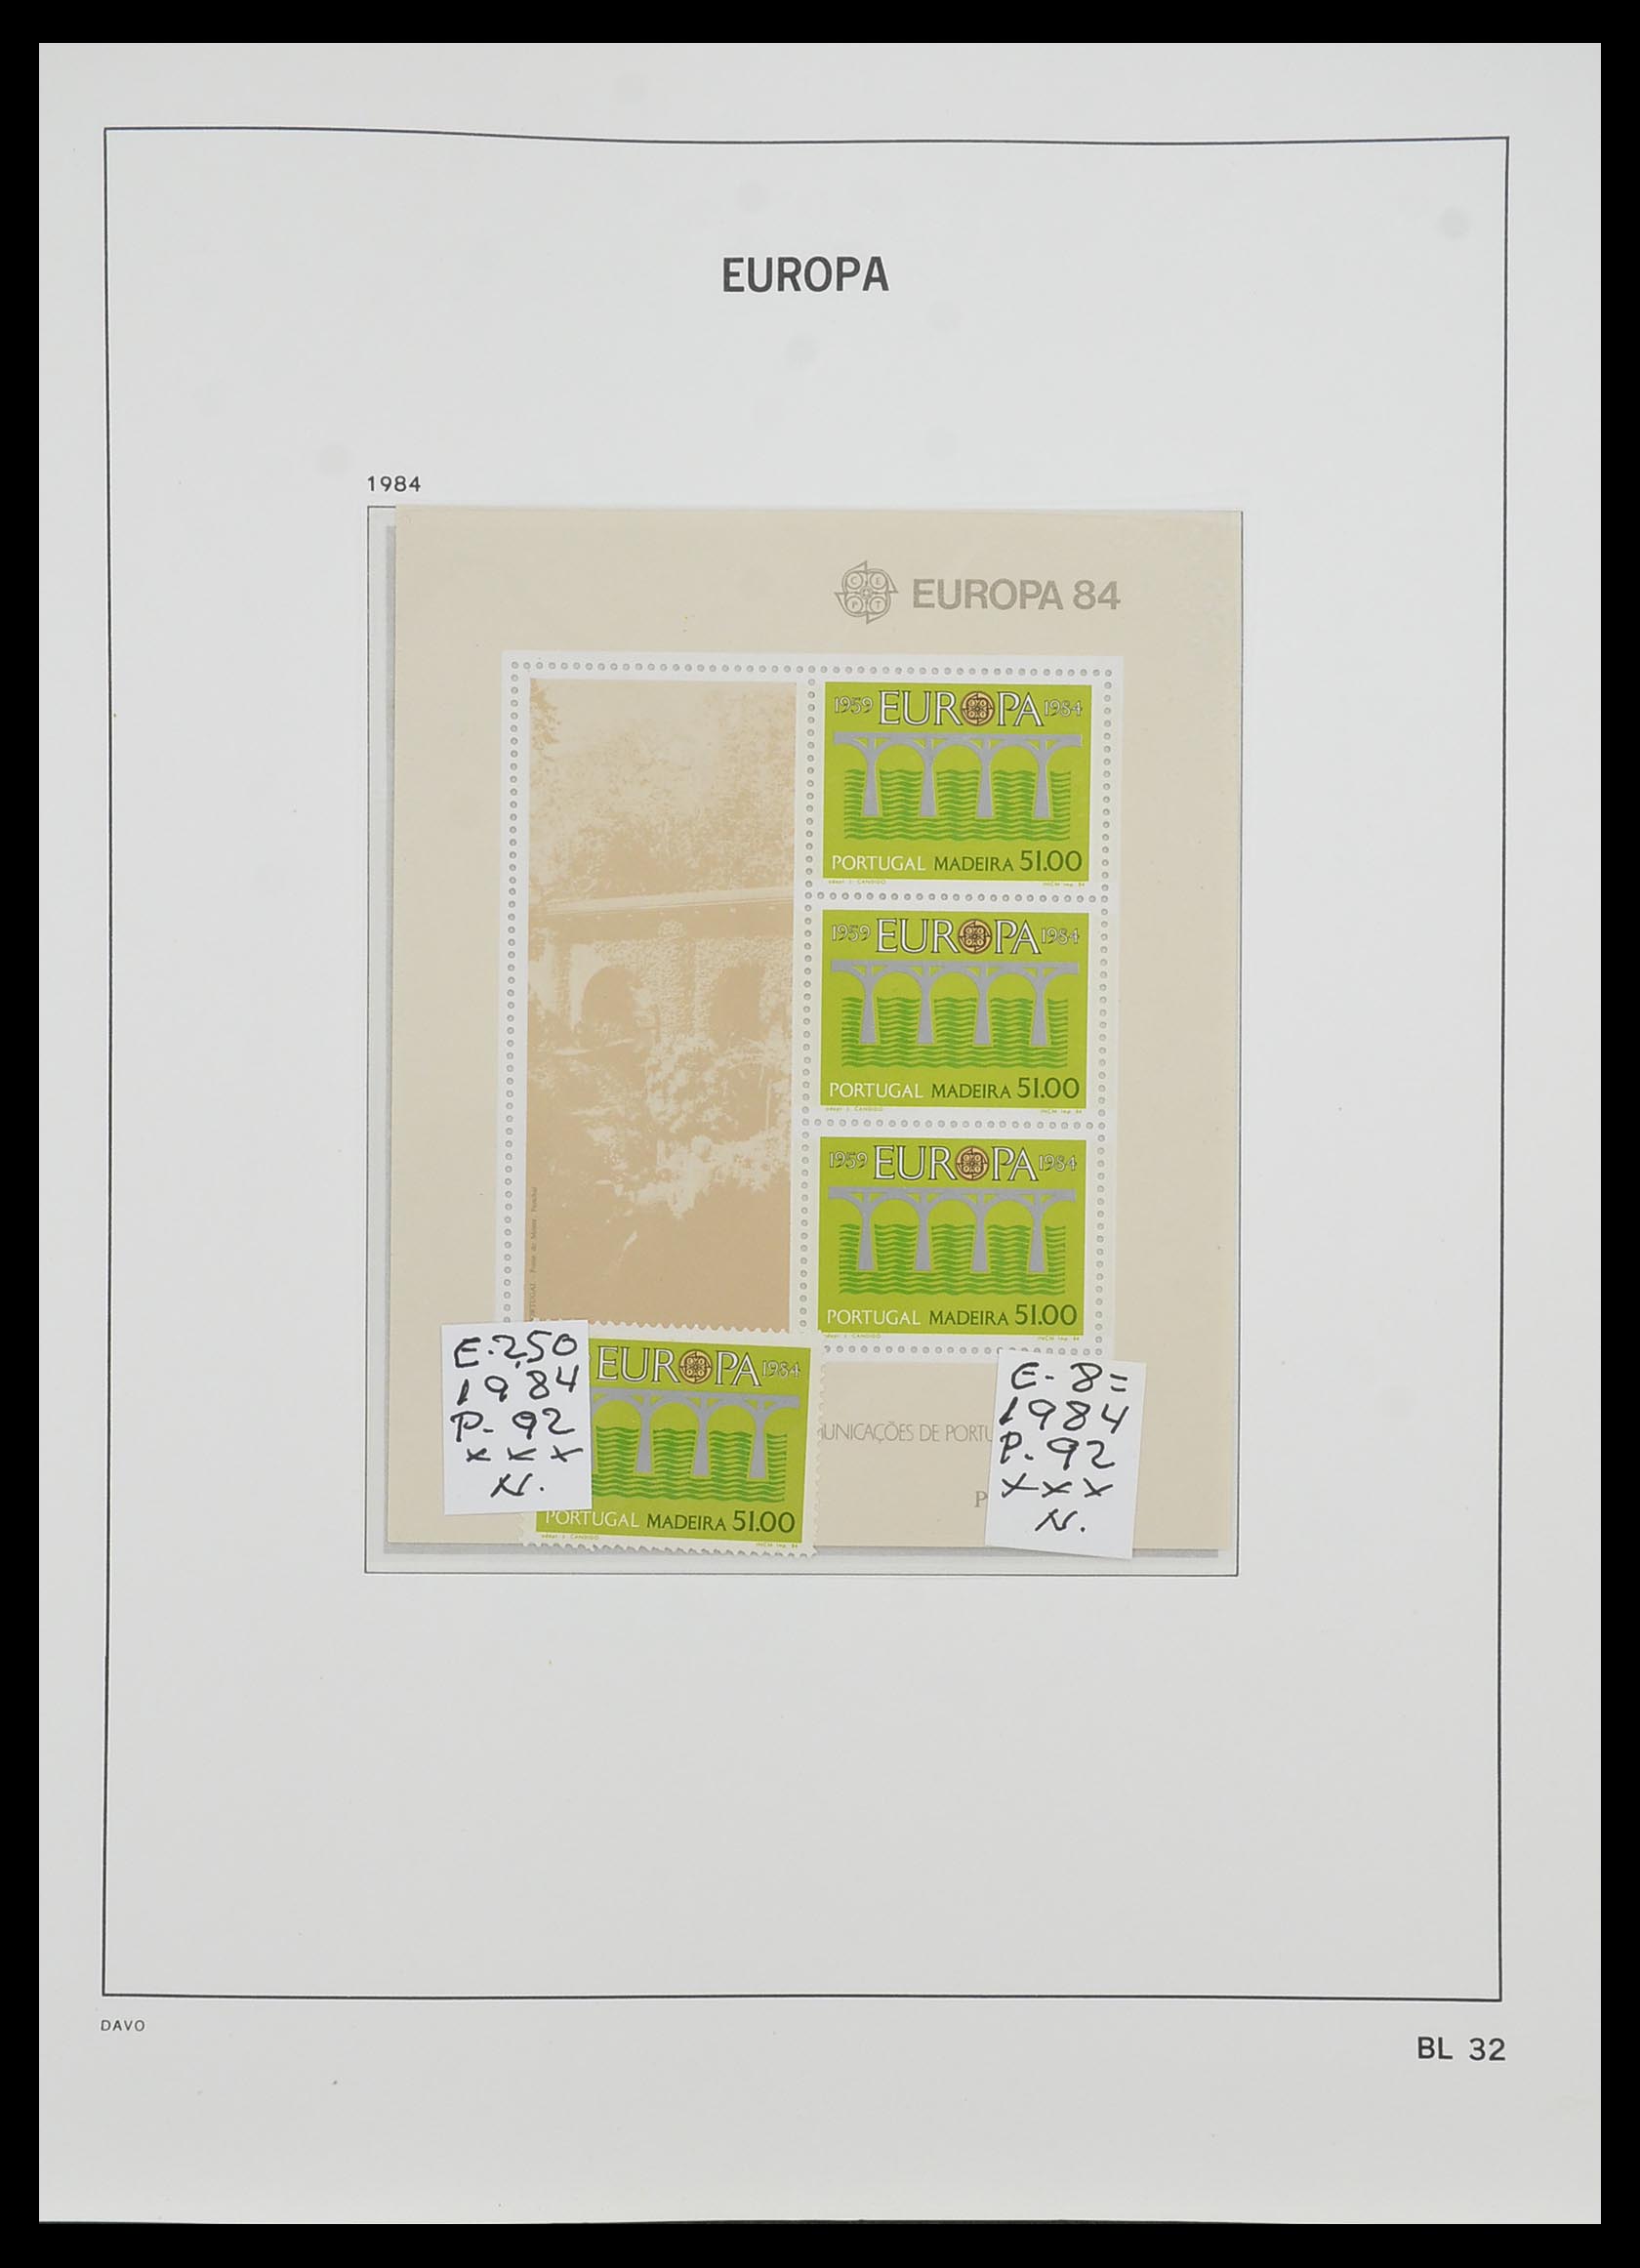 33985 033 - Stamp collection 33985 Europa CEPT souvenir sheets 1974-2014.